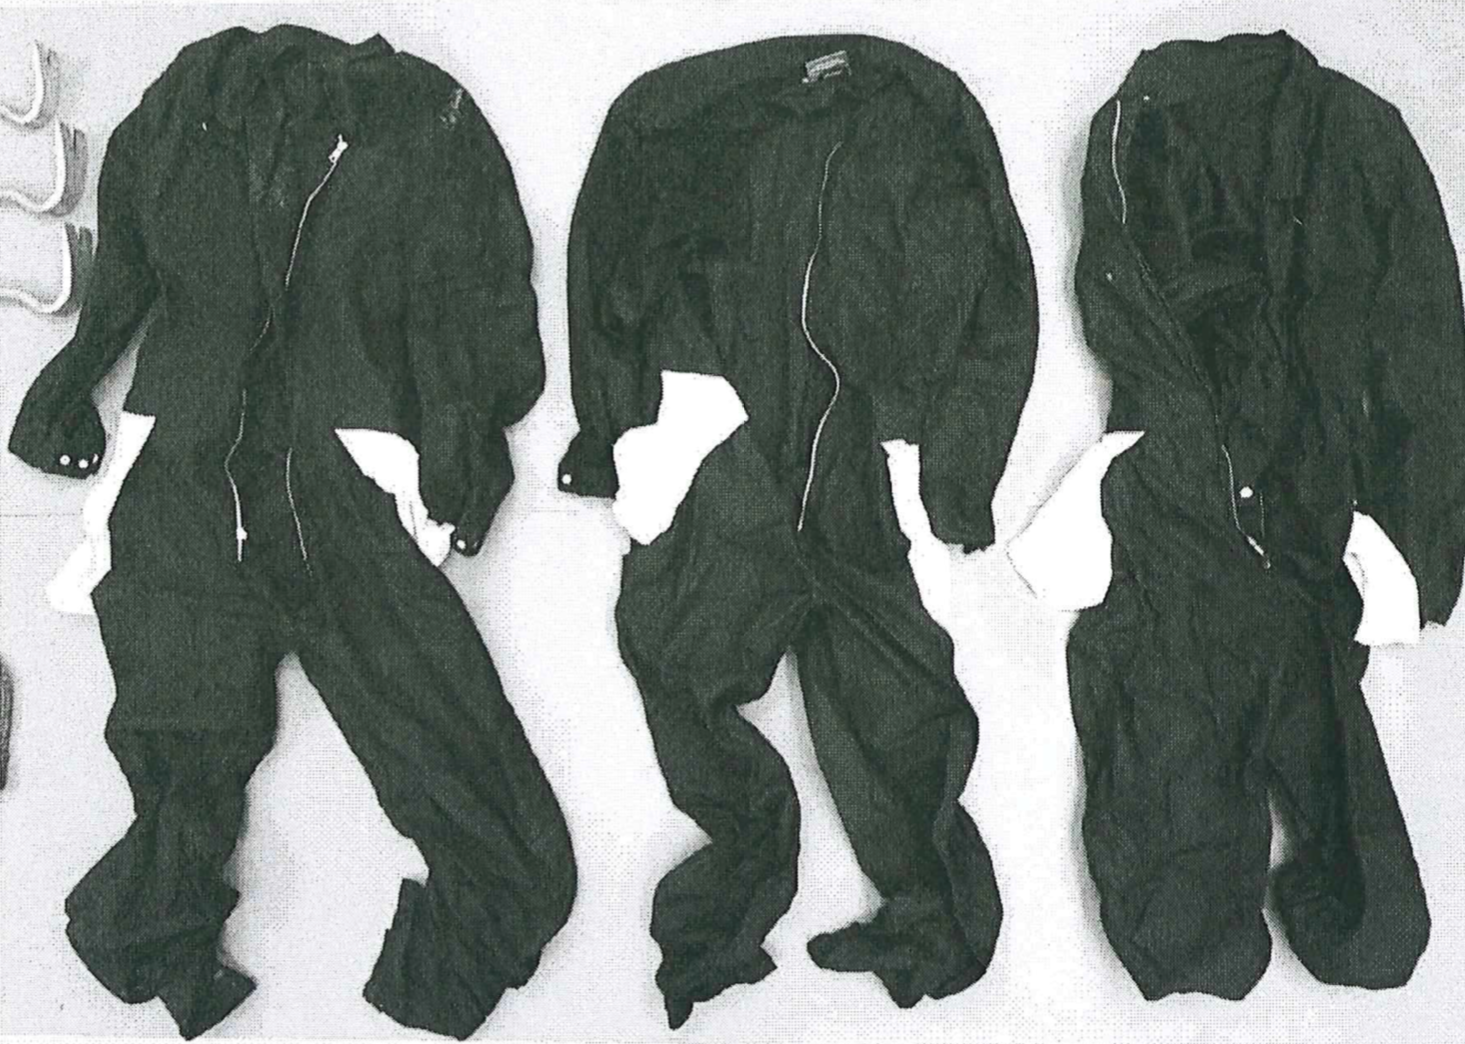 Gärningsmännens overaller hittades och beslagtogs efter rånet.